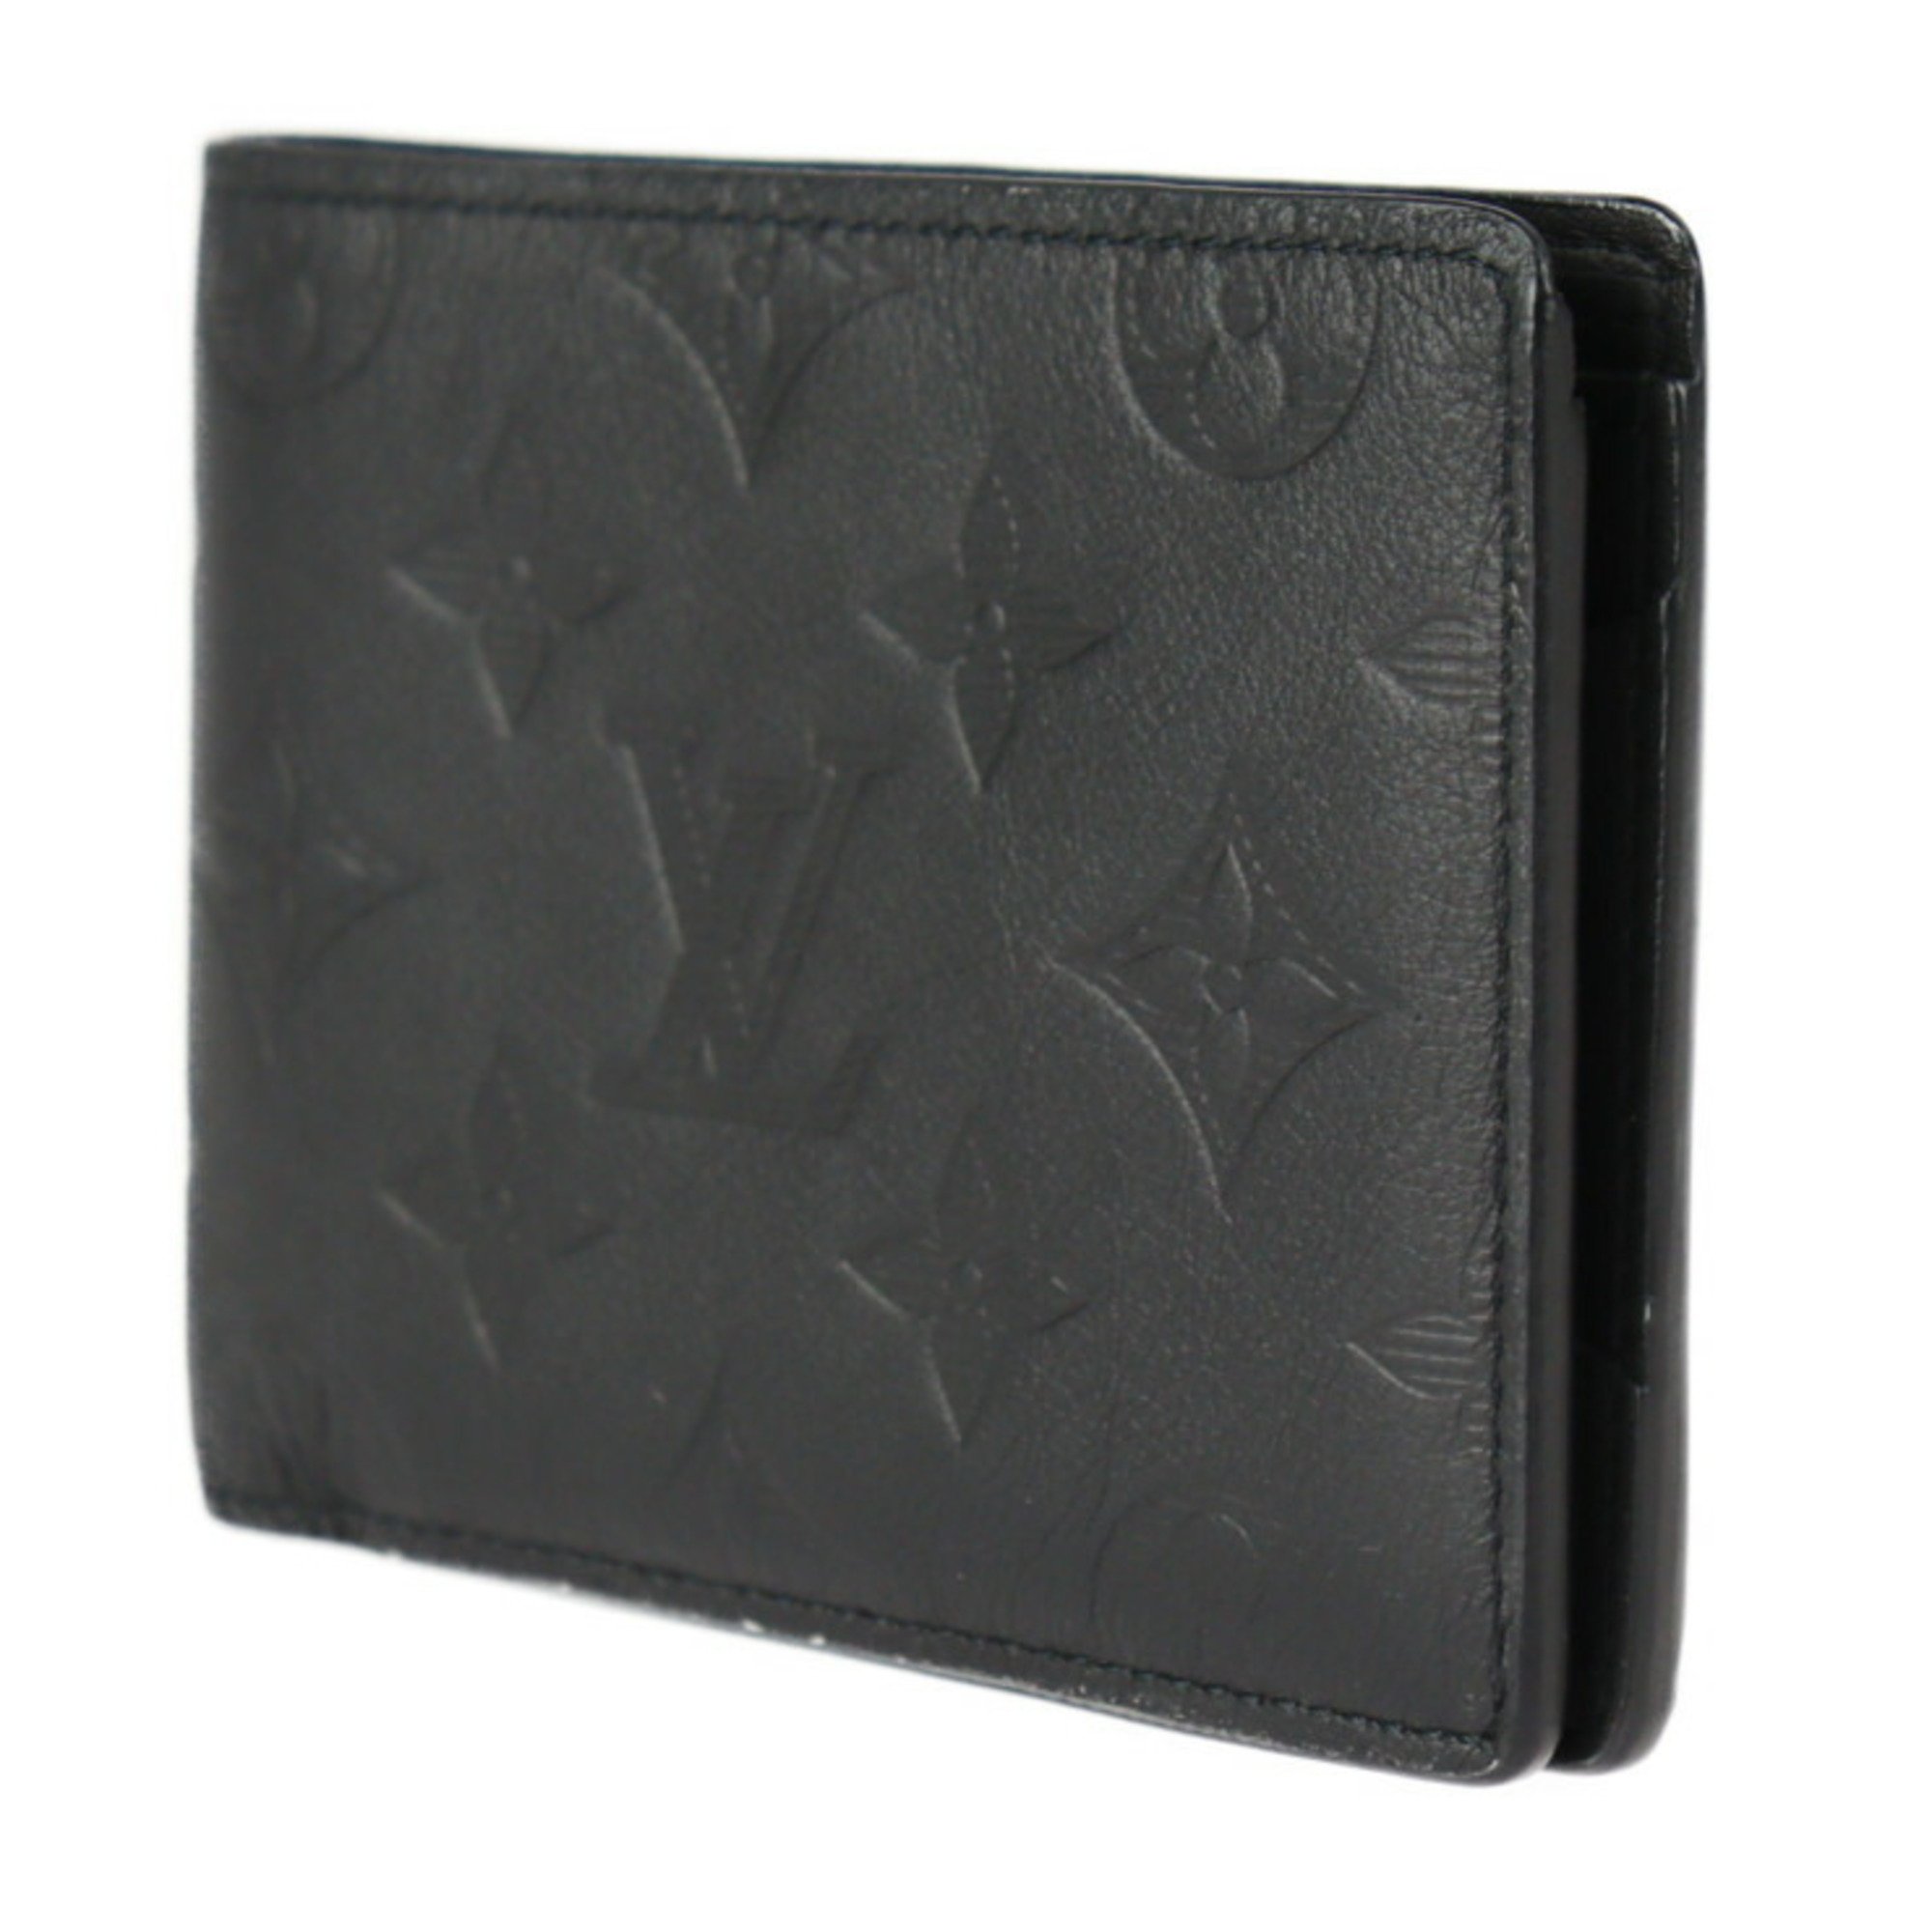 LOUIS VUITTON Louis Vuitton Portefeuille Multiple Bifold Wallet M62901 Monogram Shadow Noir Black